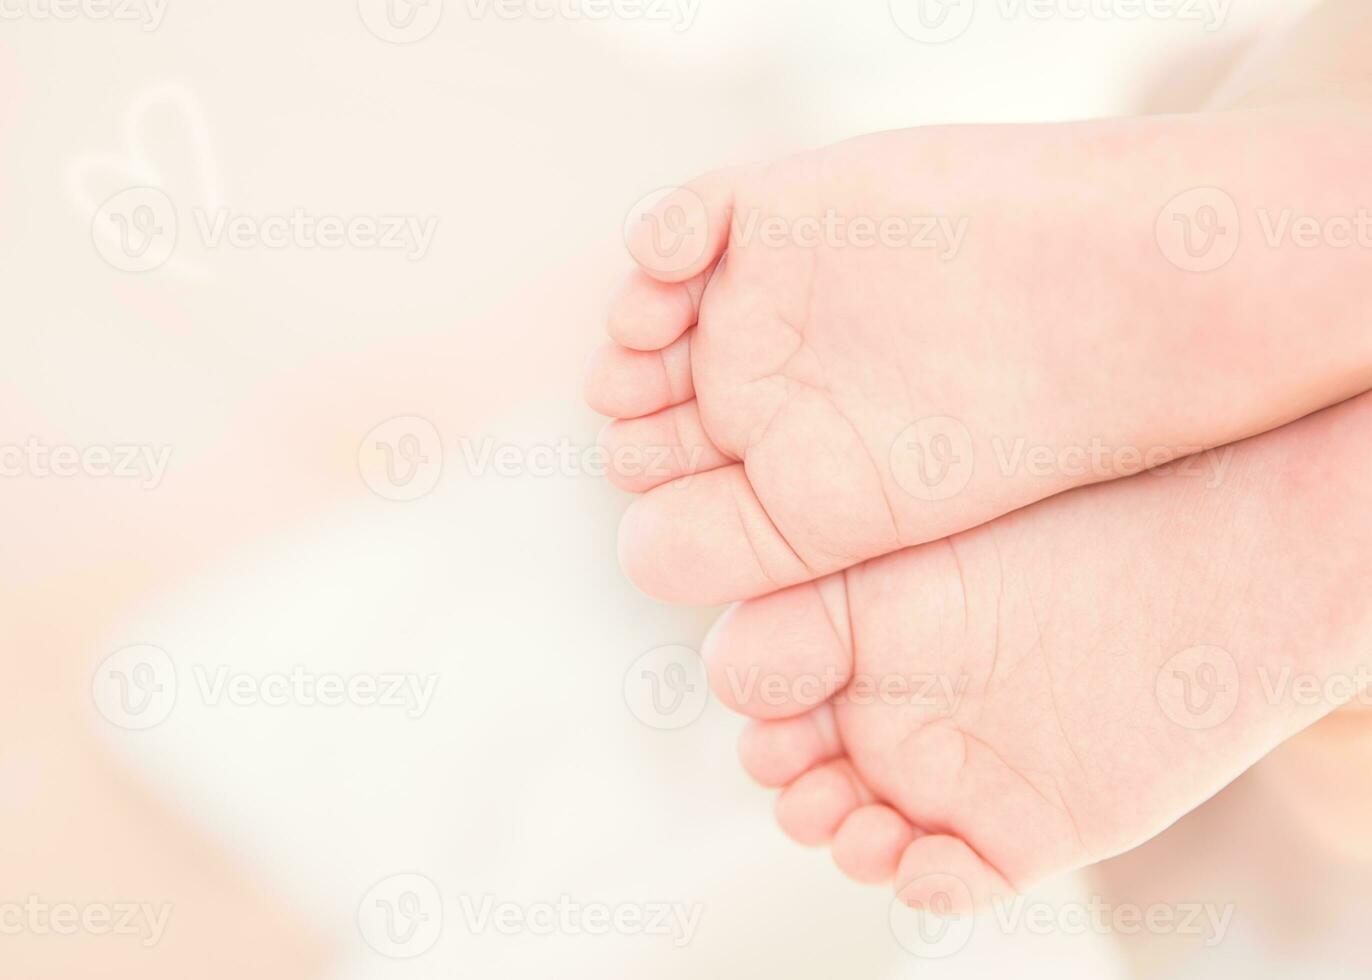 jolis petits pieds de bébé photo